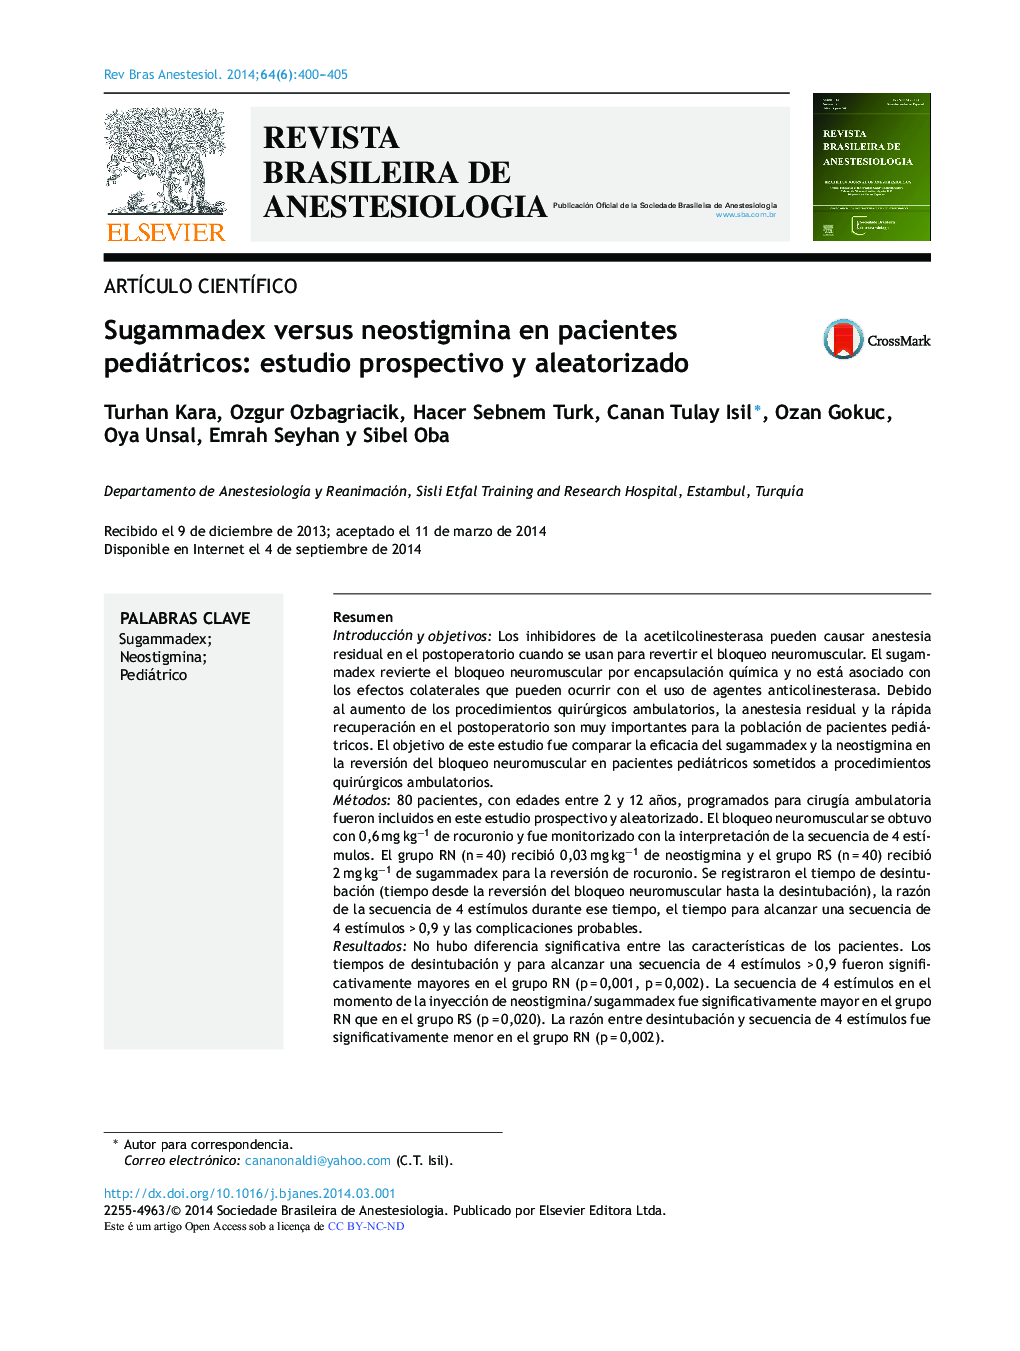 Sugammadex versus neostigmina en pacientes pediátricos: estudio prospectivo y aleatorizado